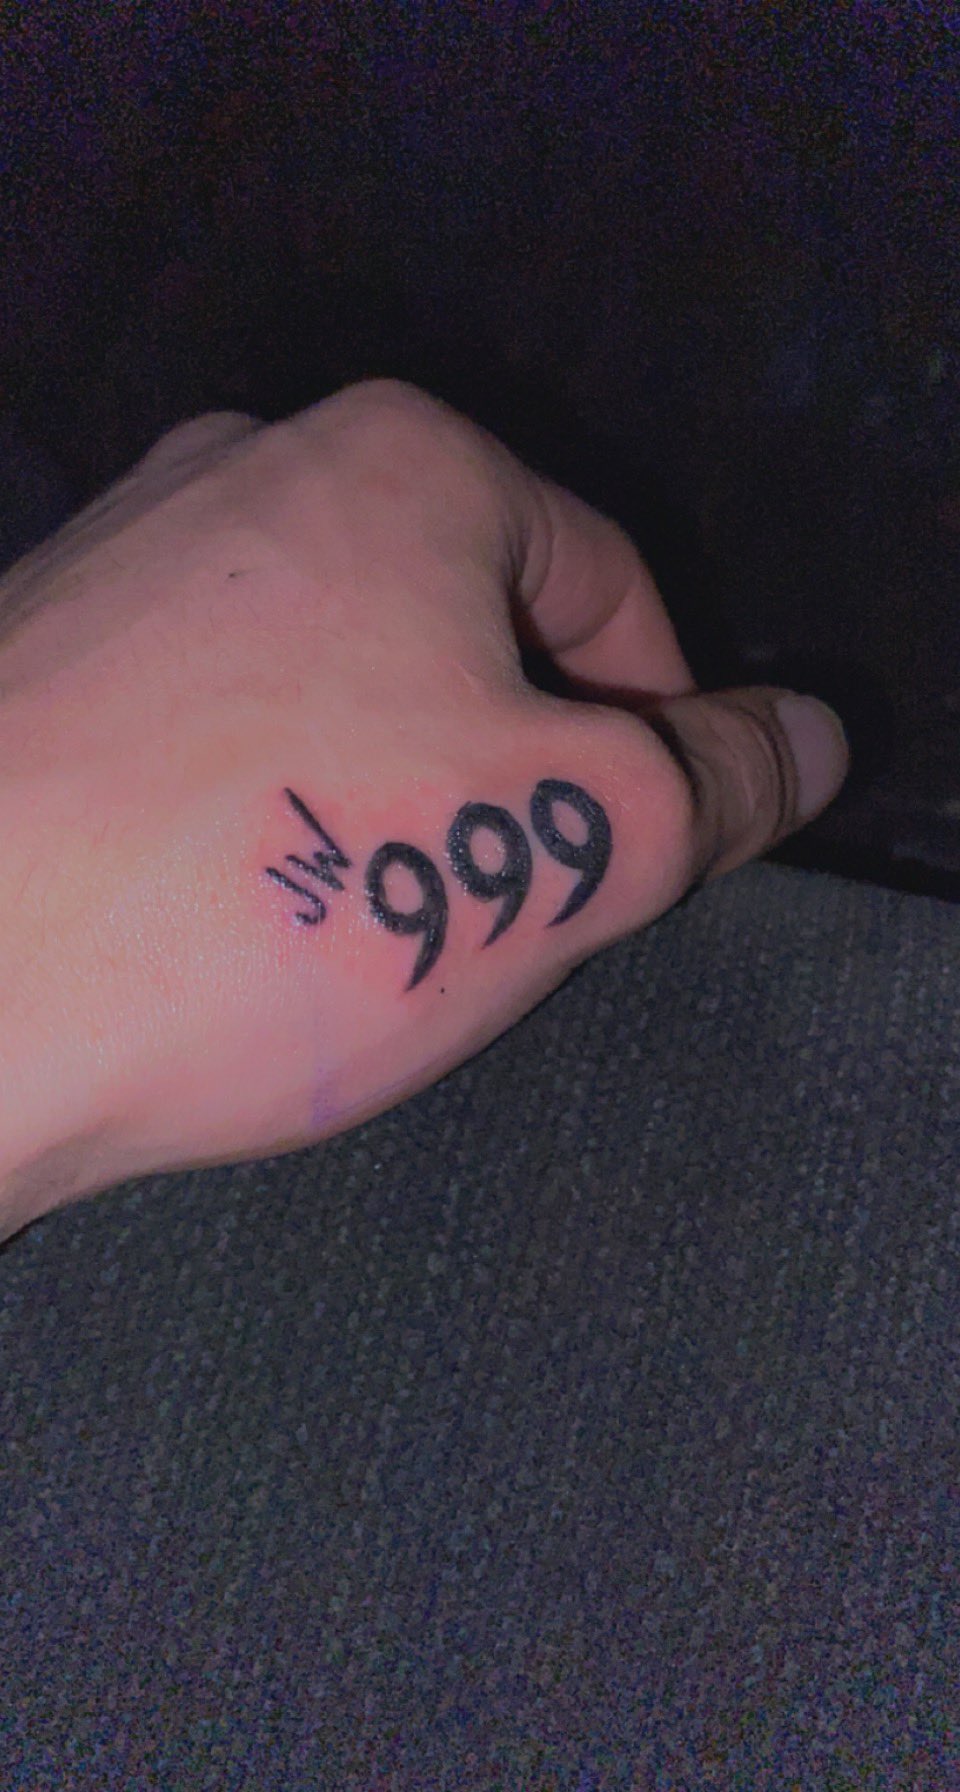 999 represents meaning: Số 999 đại diện cho gì? Sức mạnh, sự bất tử và sự thành công. Đây là một trong những loại hình xăm phổ biến nhất trên thế giới. Hãy khám phá thế giới tuyệt vời của những hình xăm số 999 và tìm hiểu thêm về ý nghĩa của chúng.